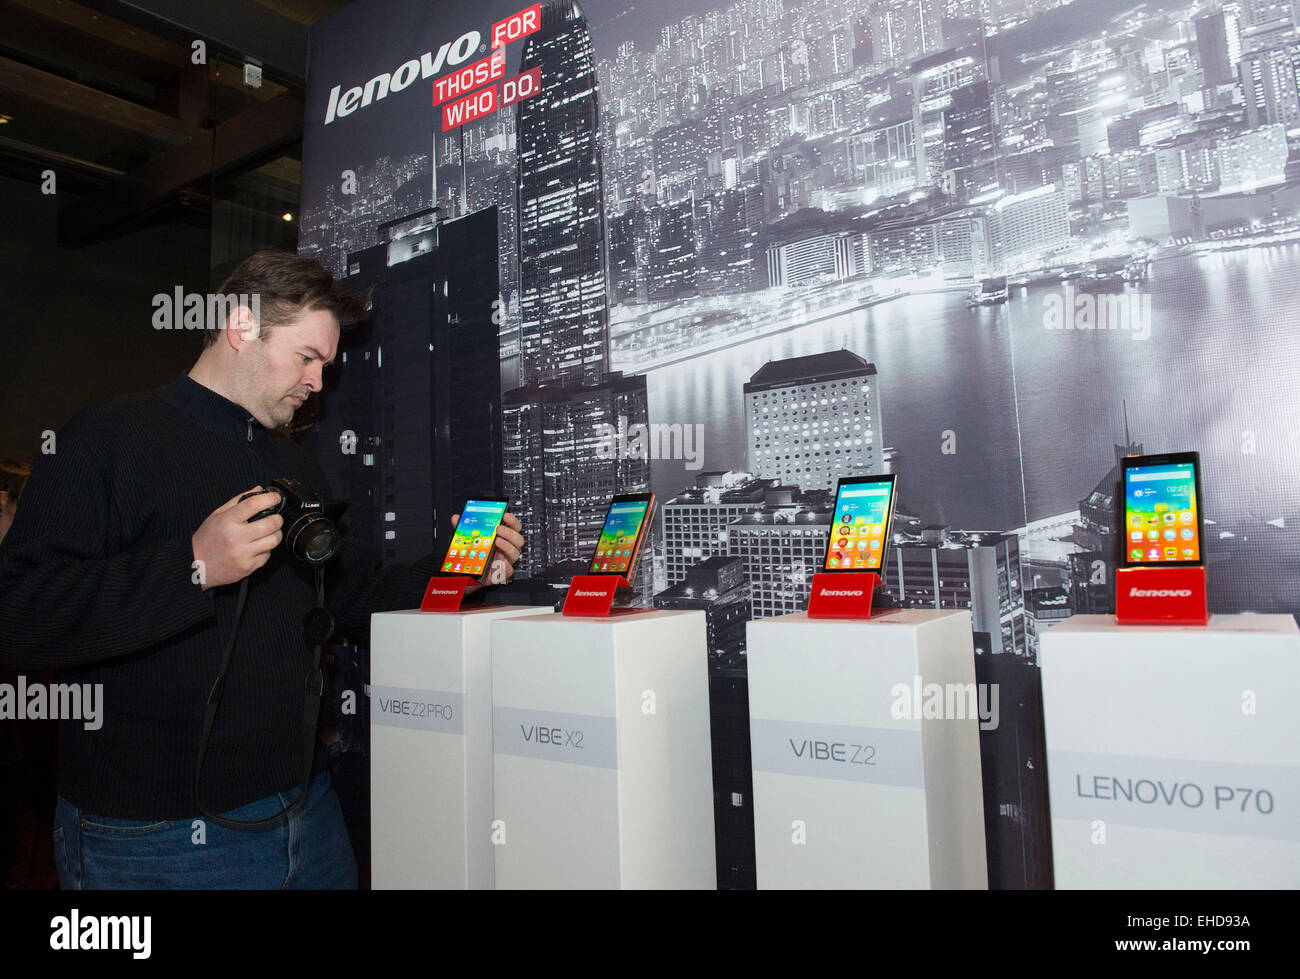 (150312)--ZAGREB, 12. März 2015 (Xinhua)--A Journalist schaut auf Lenovo Smartphones während einer Präsentation in Zagreb, Kroatien, 12. März 2015. Lenovo, eine chinesische Technologie-Riesen, lanciert eine neue Linie von sechs Smartphones--VIBE Z2 PRO, VIBE Z2, X2, Lenovo P70, Lenovo S90 und Lenovo A536 - VIBE in Kroatien am Donnerstag. (Xinhua/Miso-Lisanin) (Zjy) Stockfoto